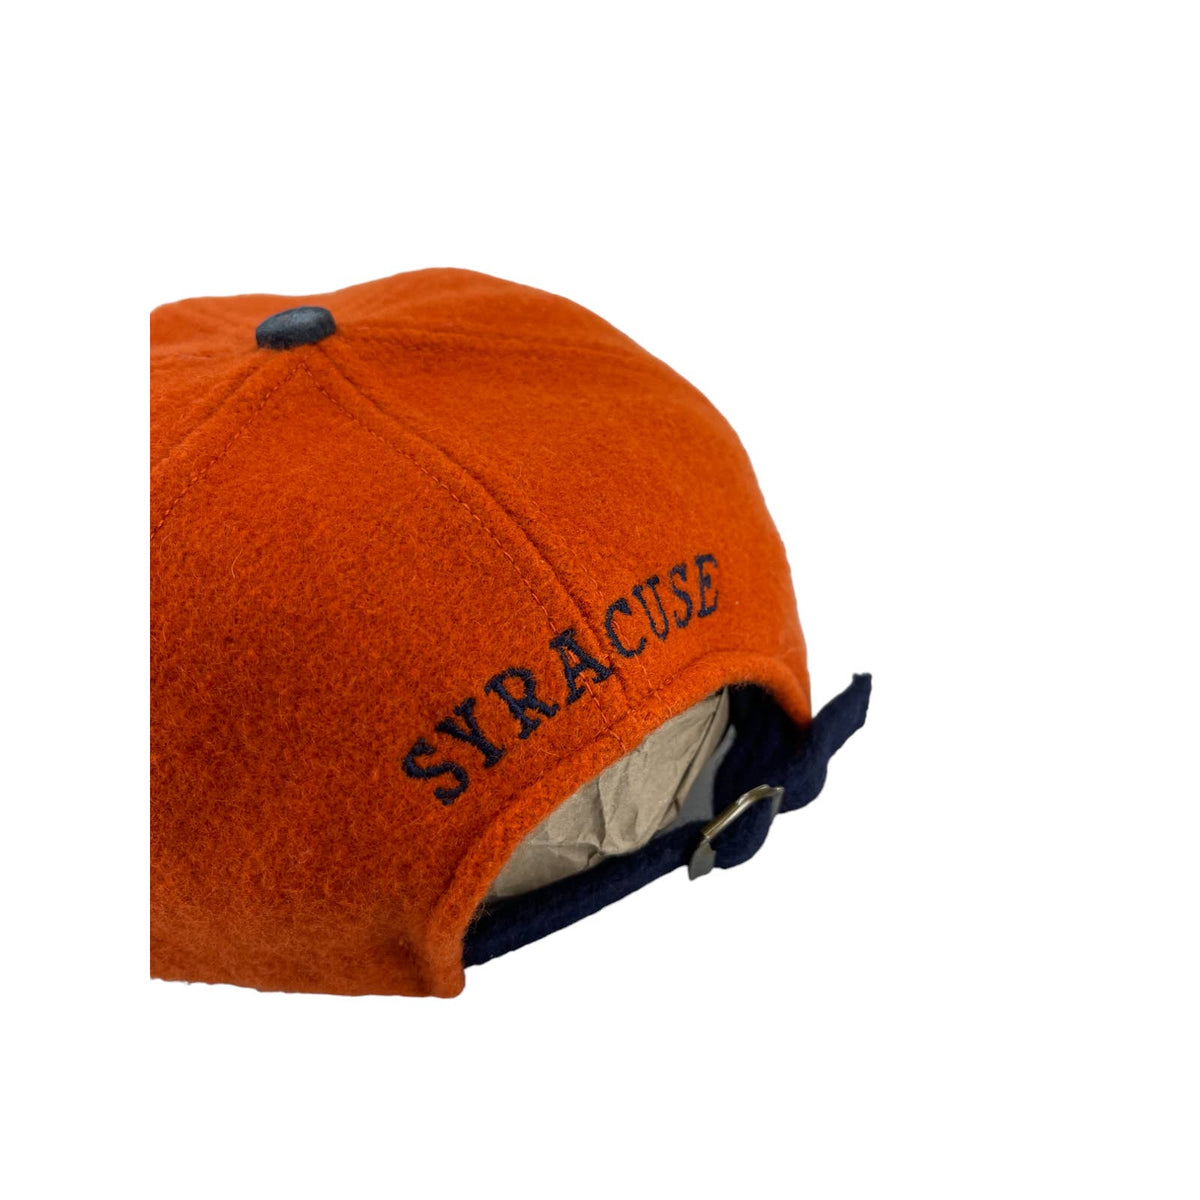 Vintage 1990's Syracuse University Suede Wool Adjustable Hat